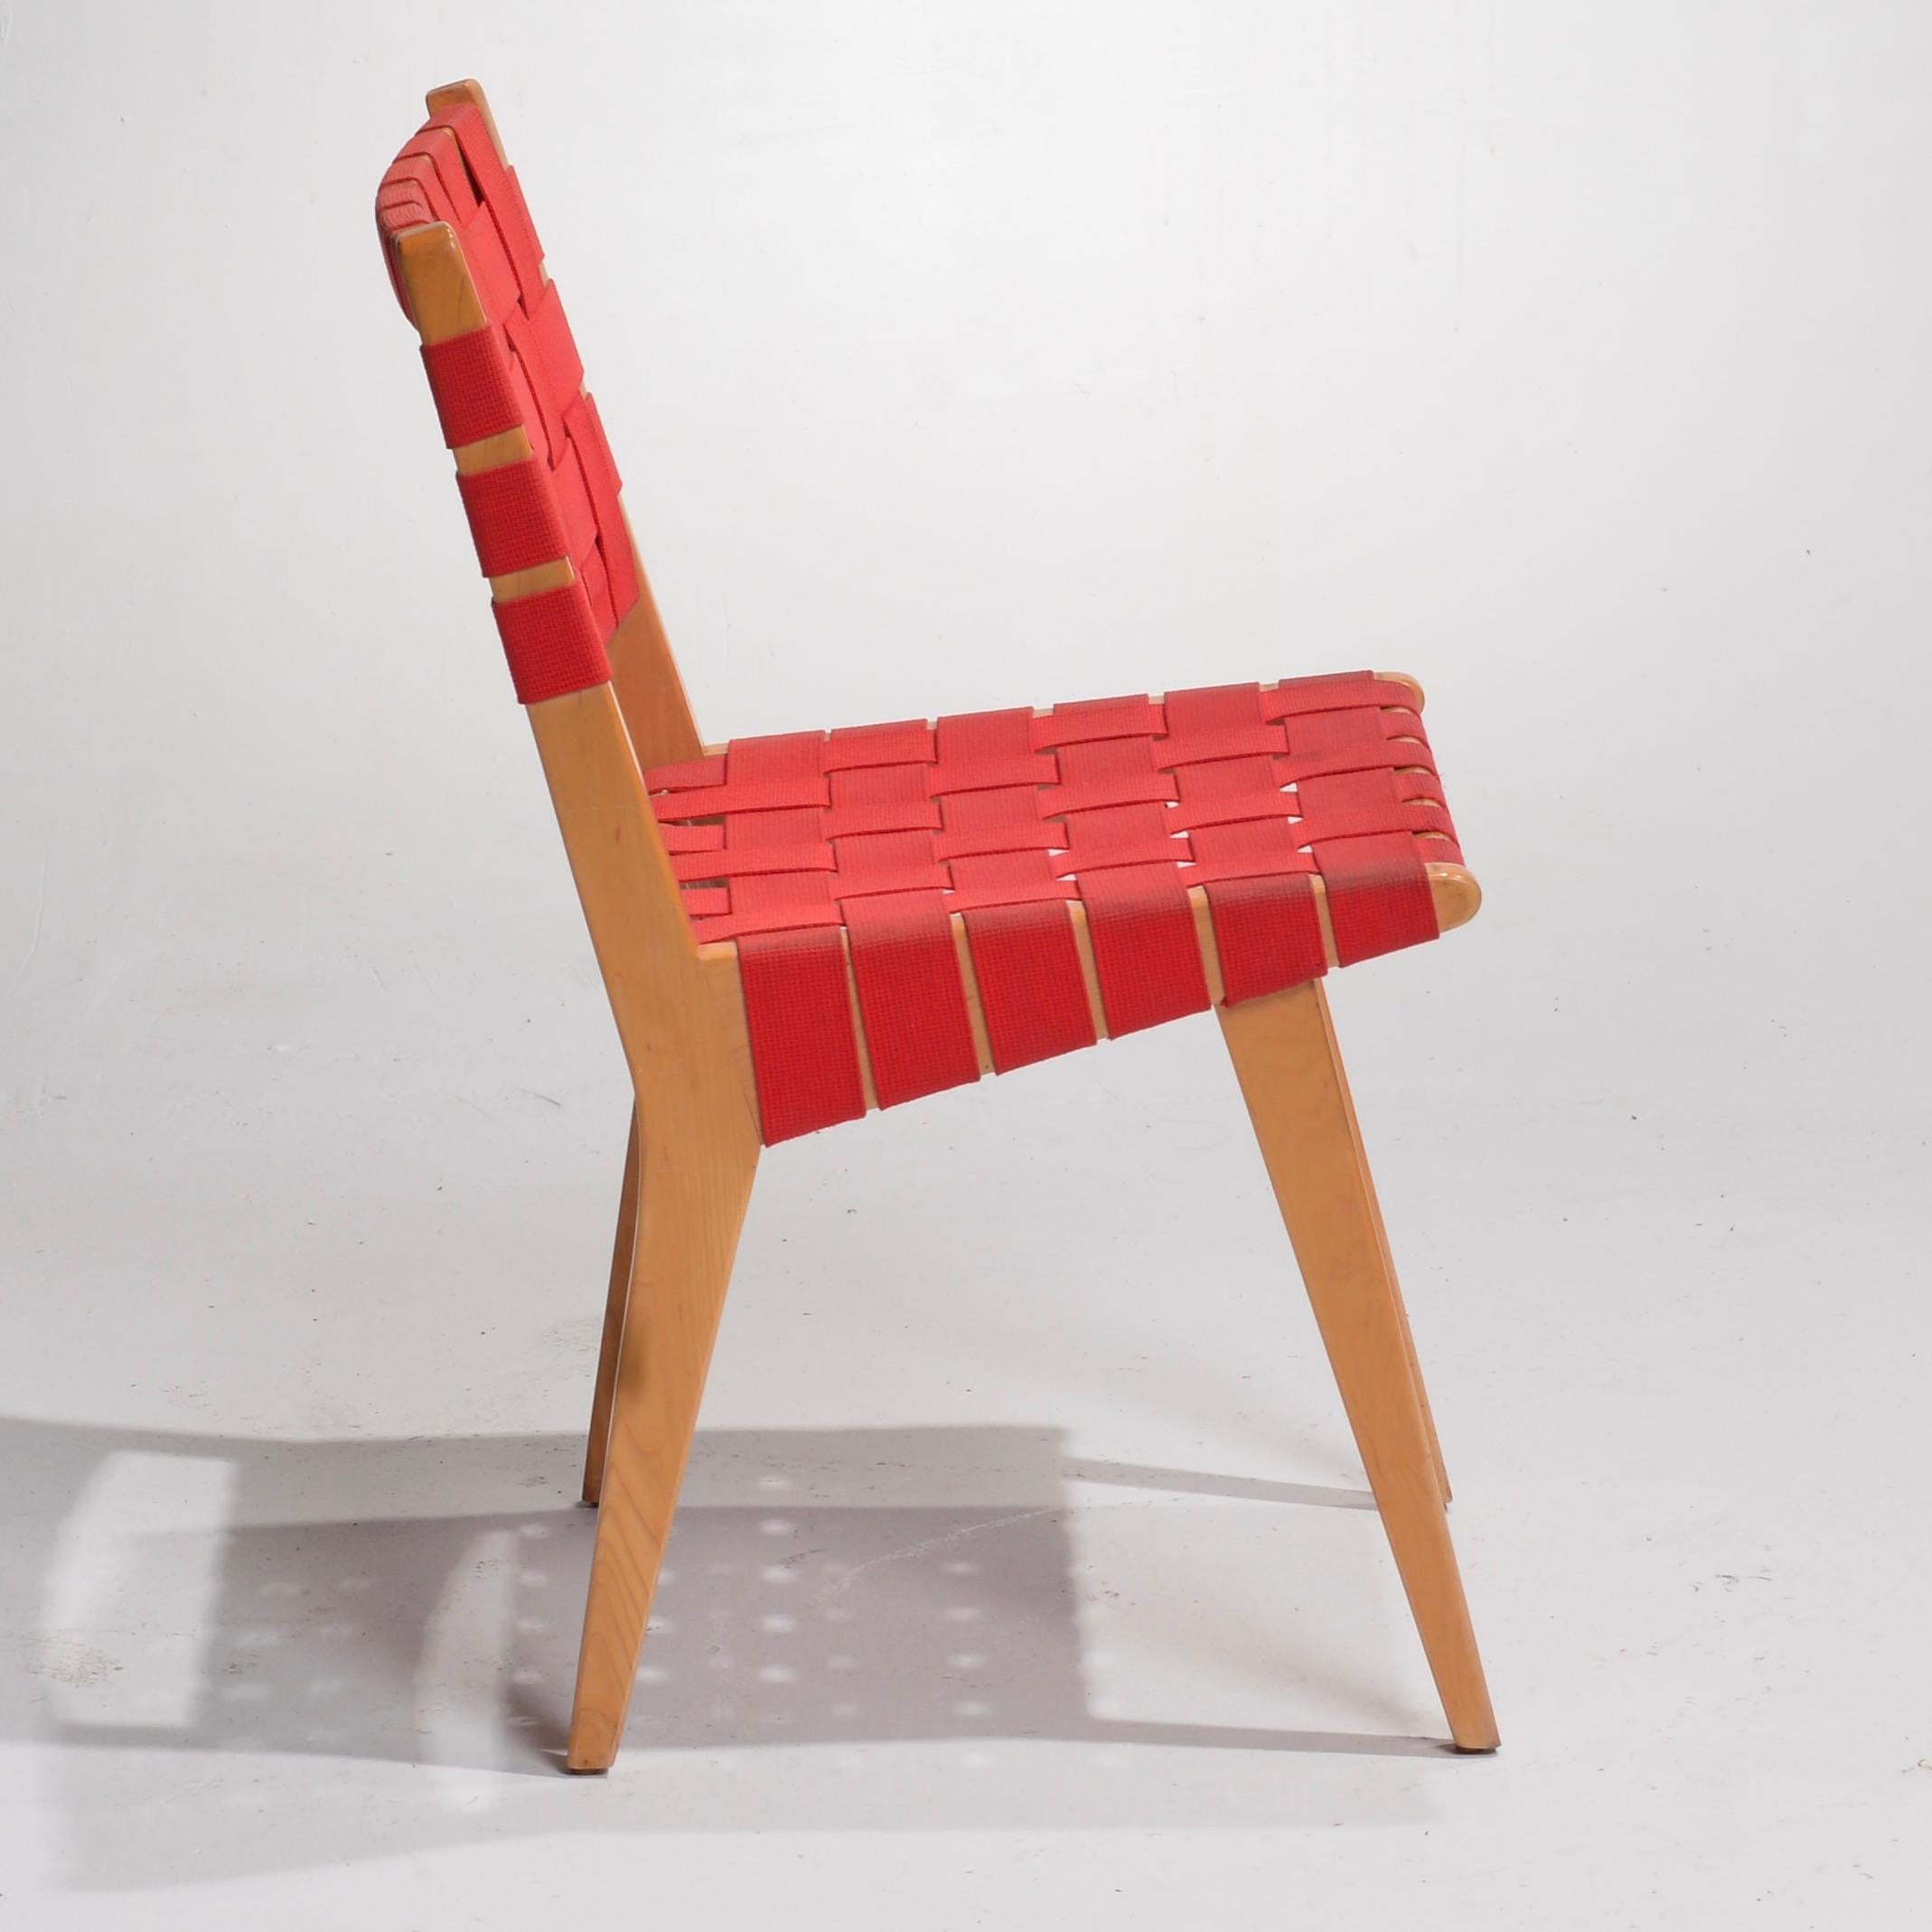 Voici la chaise d'appoint Risom de Knoll - une icône intemporelle du design moderne !

La chaise d'appoint Risom de Knoll est un véritable témoignage de l'héritage durable du design de meubles modernes. Créée par le designer danois Jens Risom en